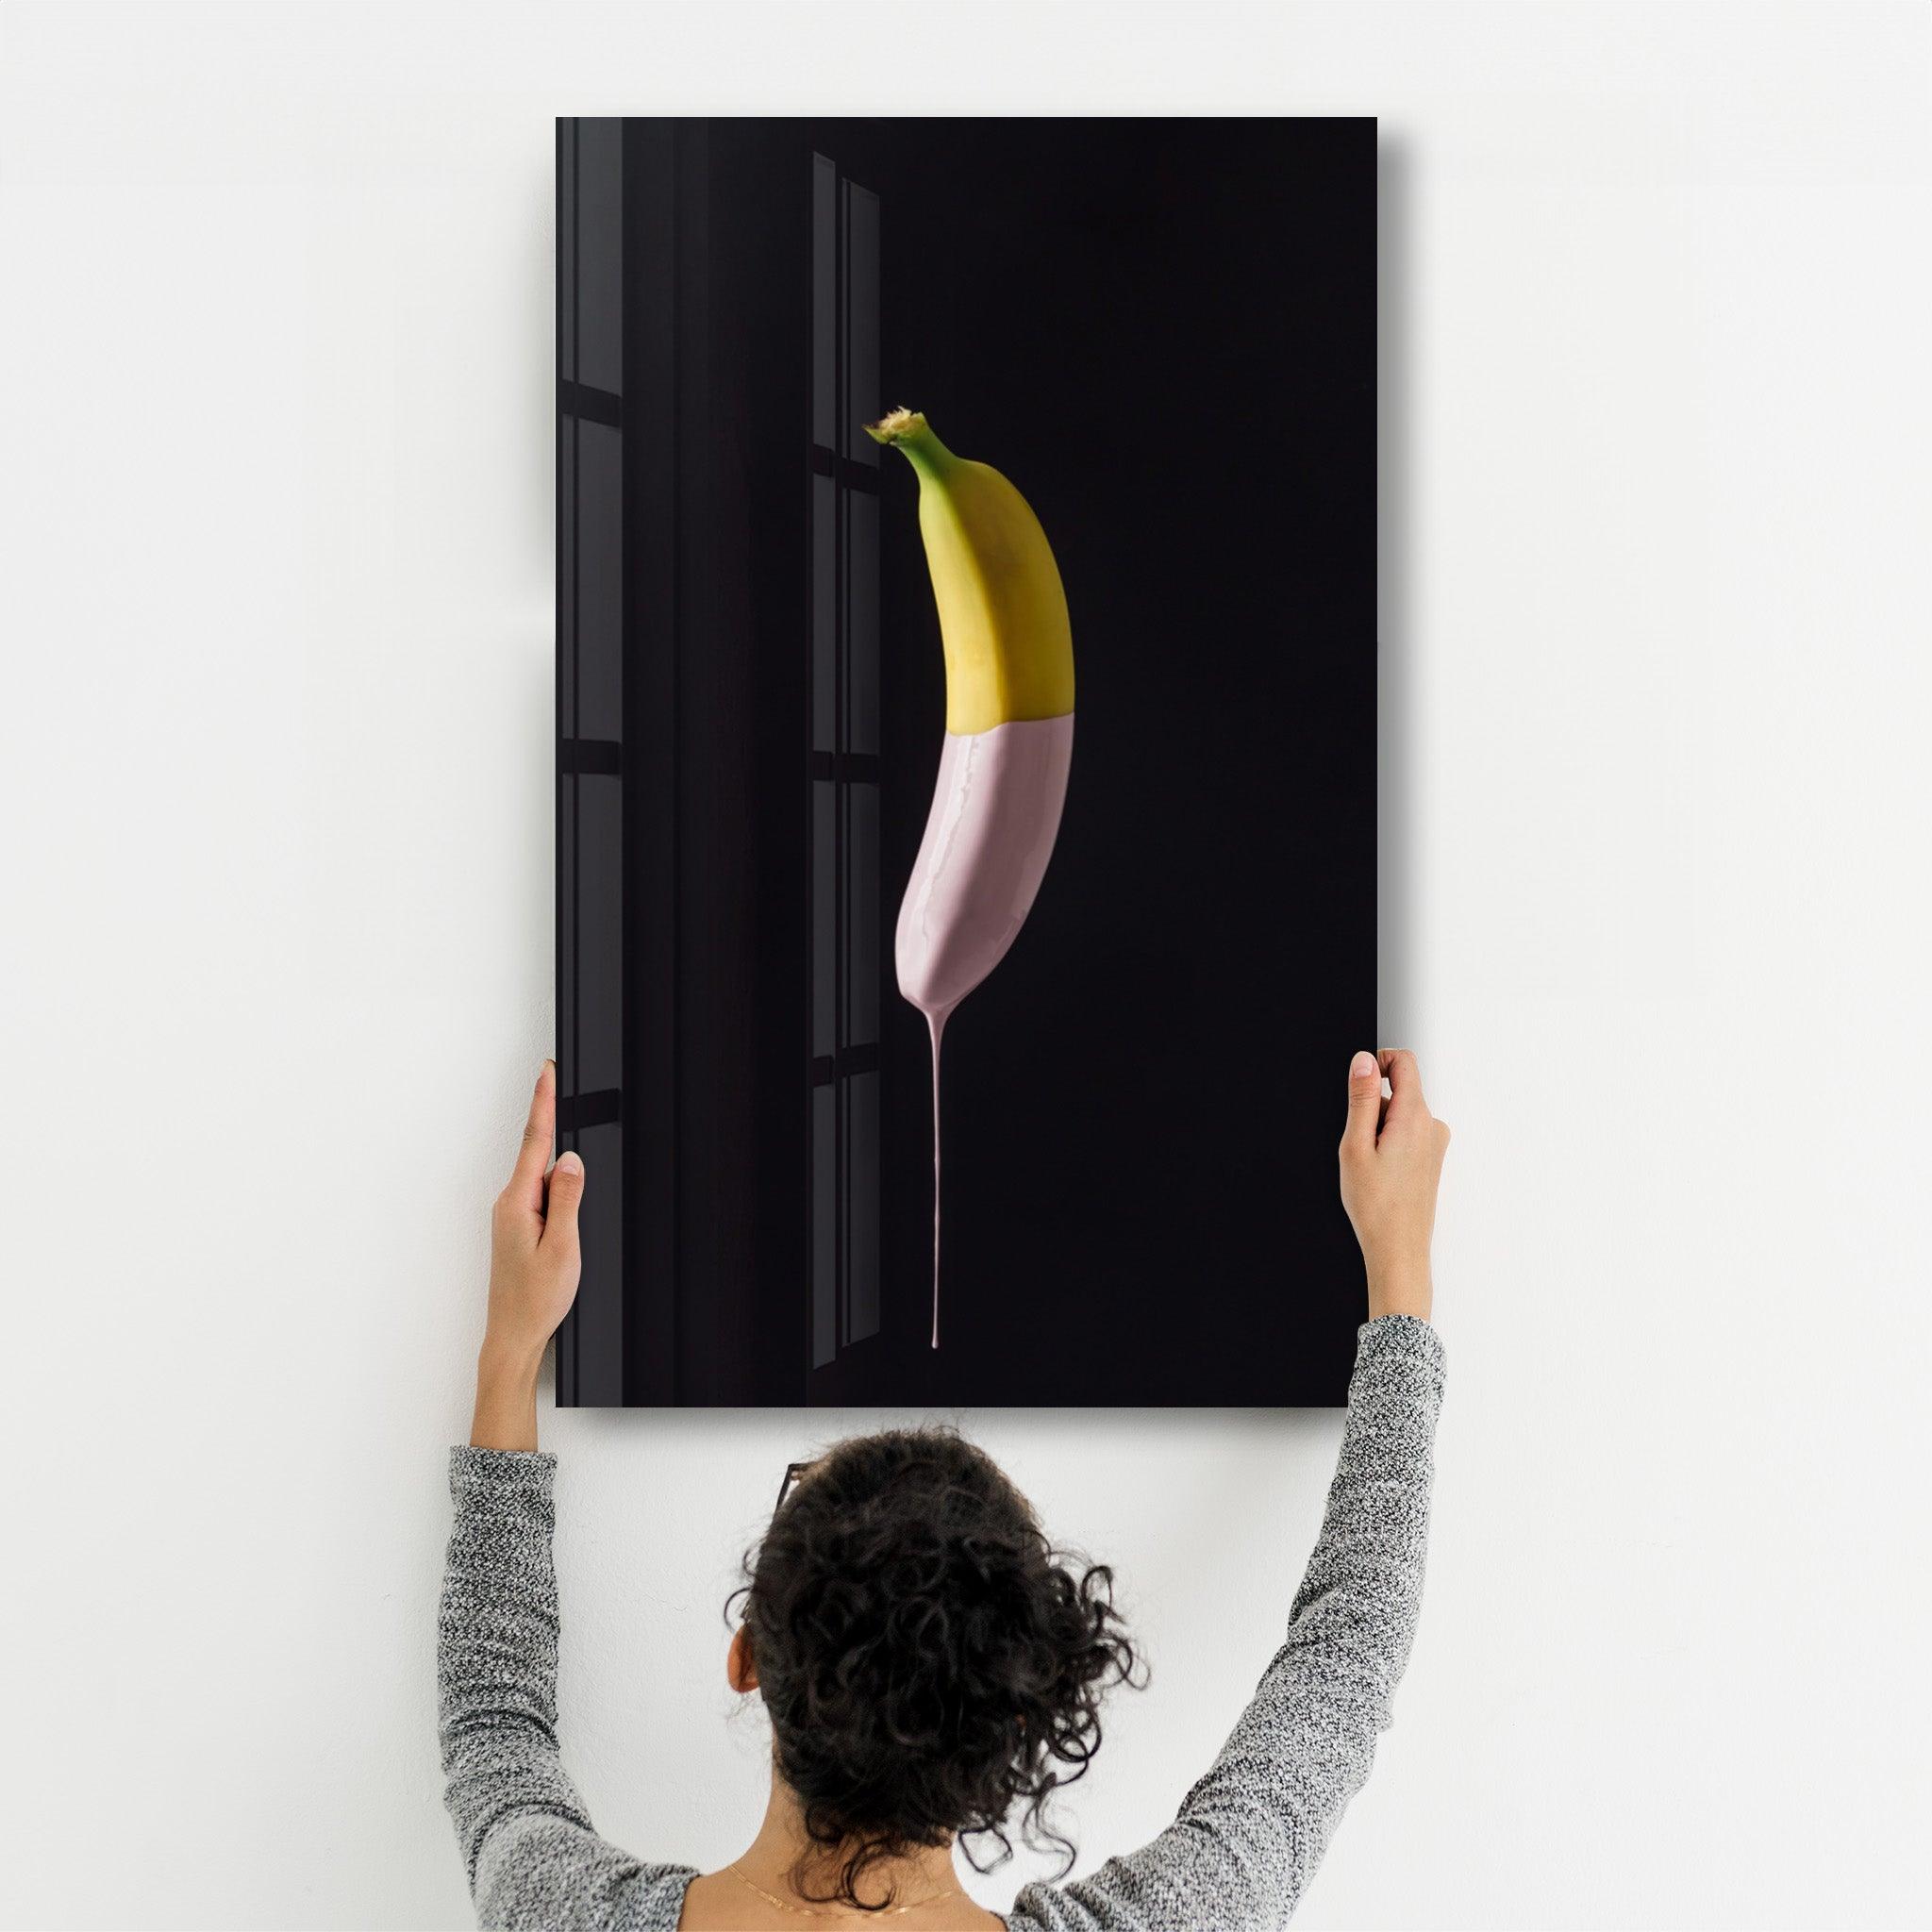 Abstract Banana | Glass Wall Art - ArtDesigna Glass Printing Wall Art